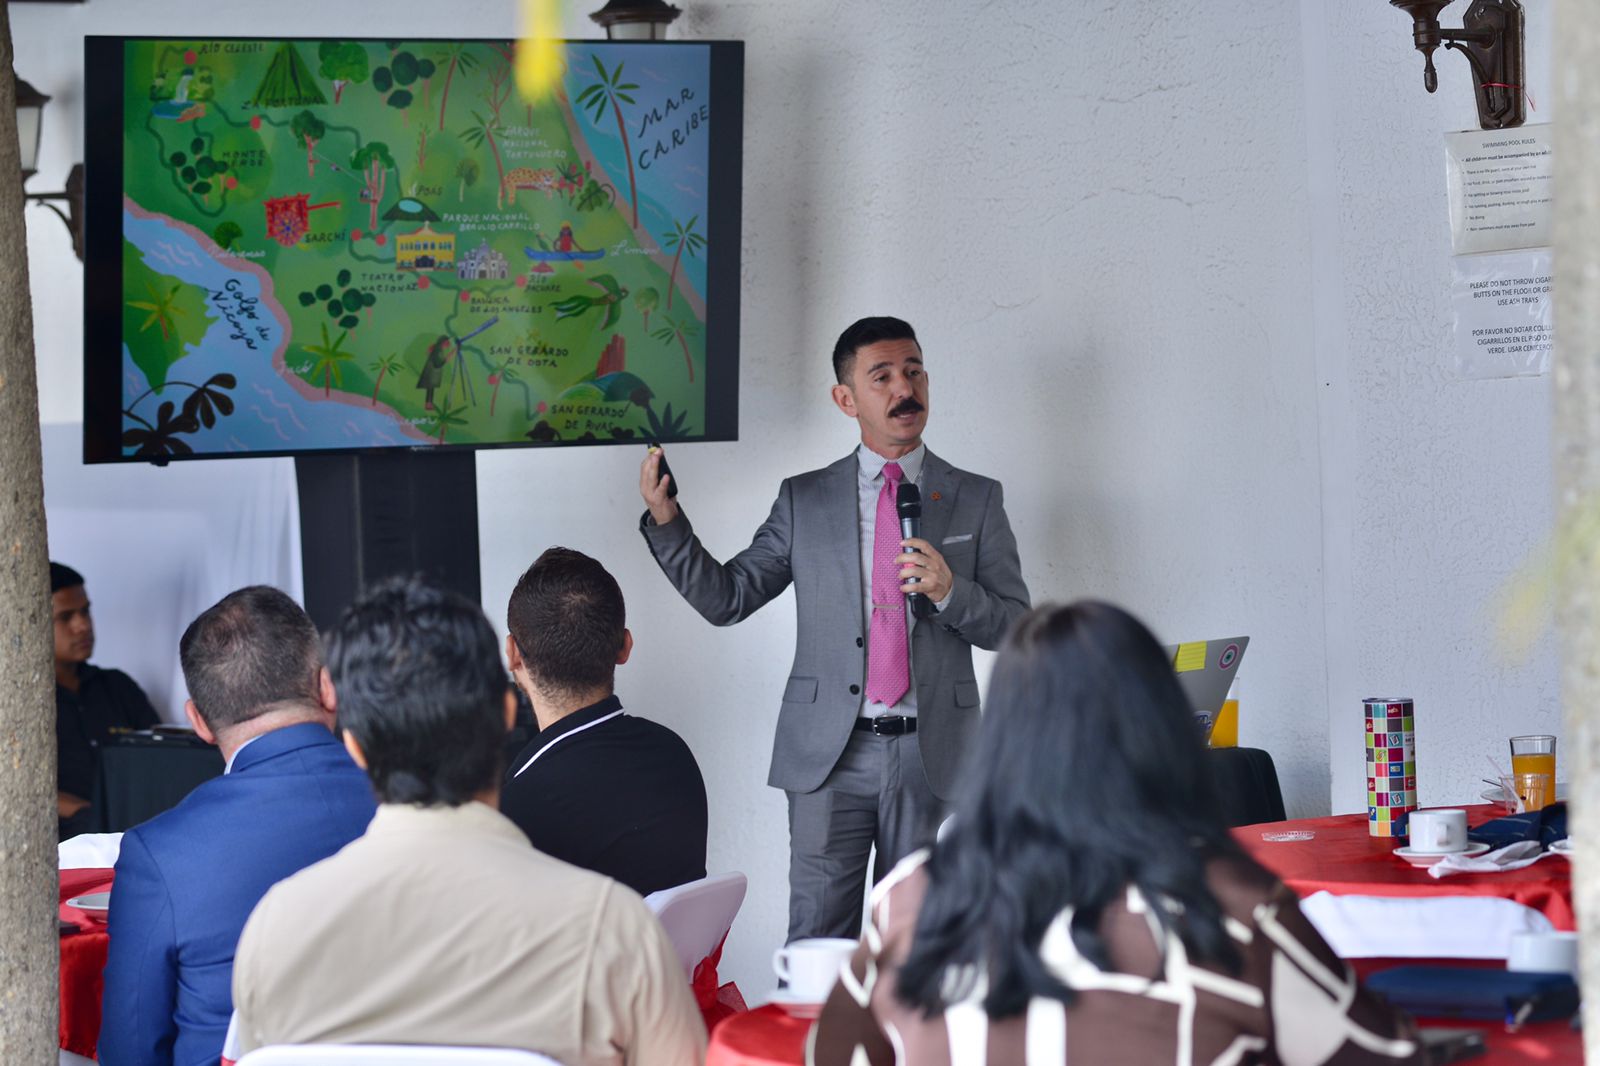 Presentacion del dispersal report por un ejecutivo de Airbnb ante una audiencia en San Jose, Costa Rica